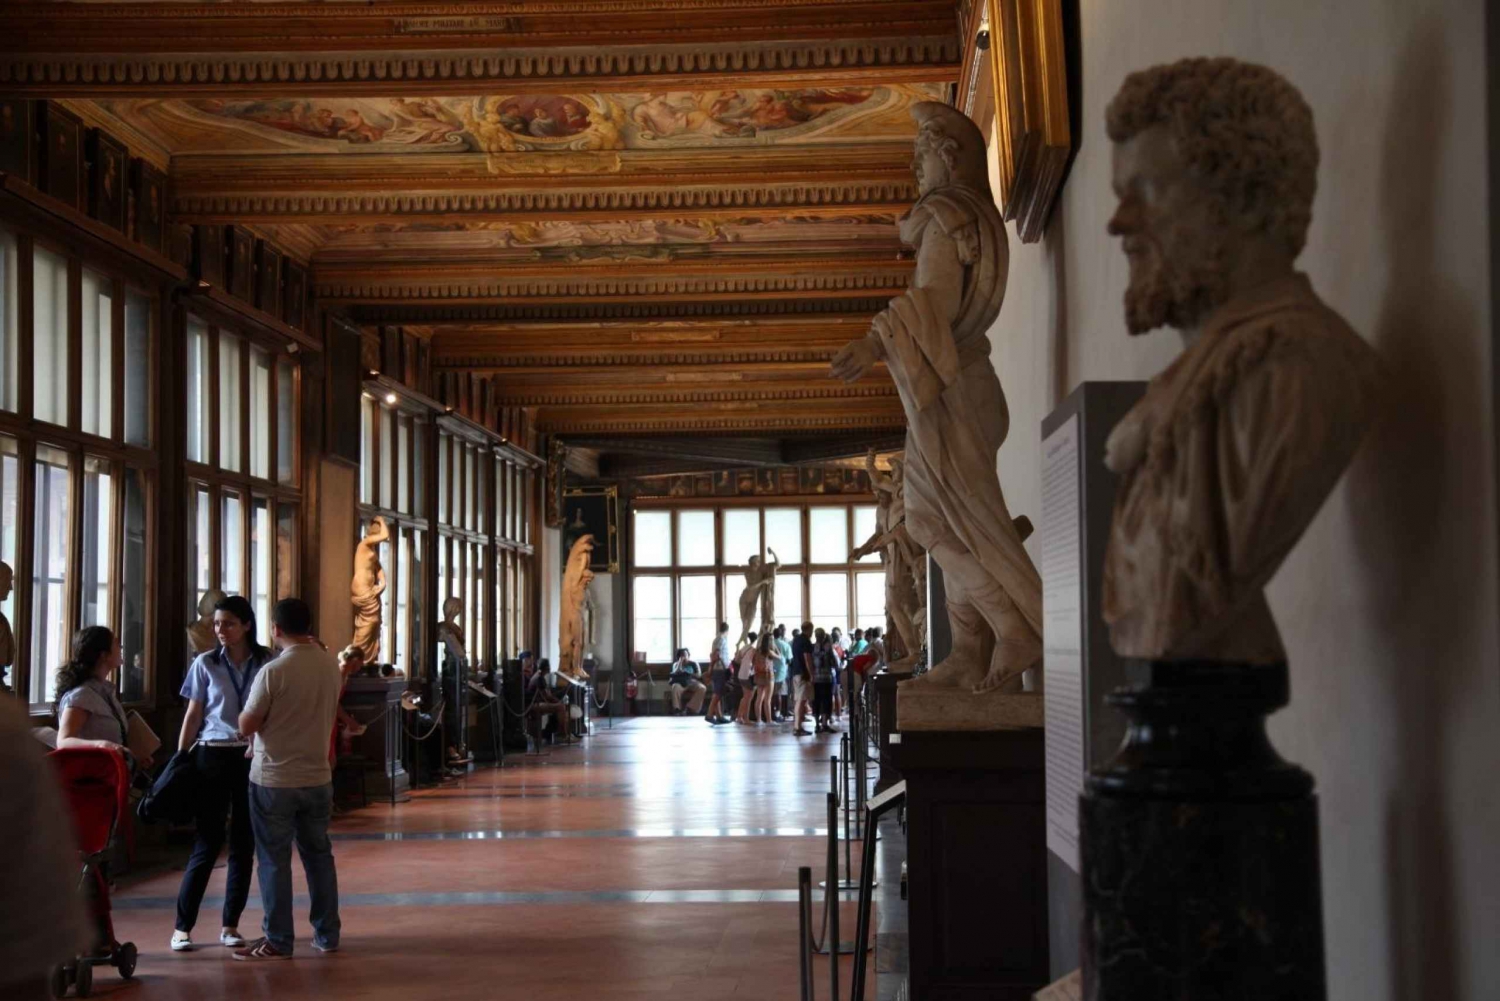 Ingressos de entrada reservada para a Galeria Uffizi sem fila